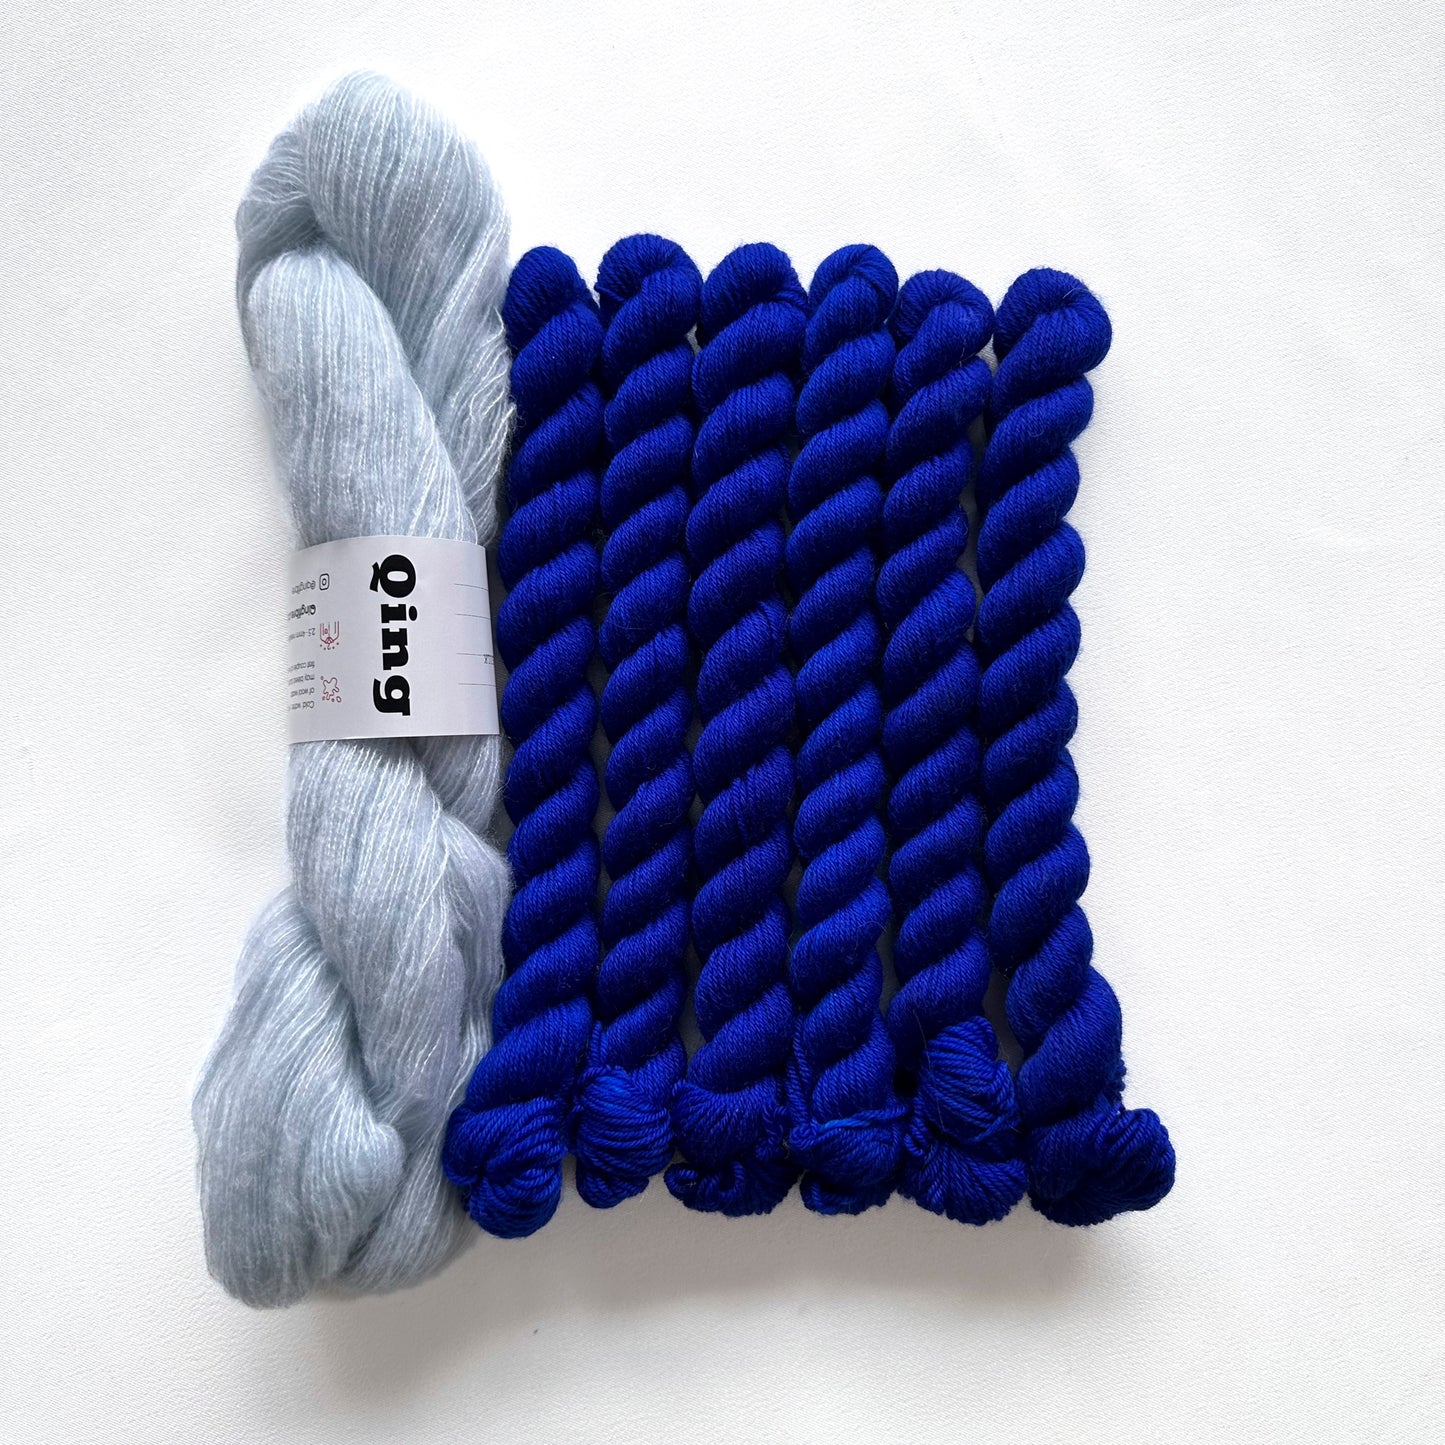 Simply Wave Long Sock Kit - Veranita & Sock Mini - Cumulus & Hero